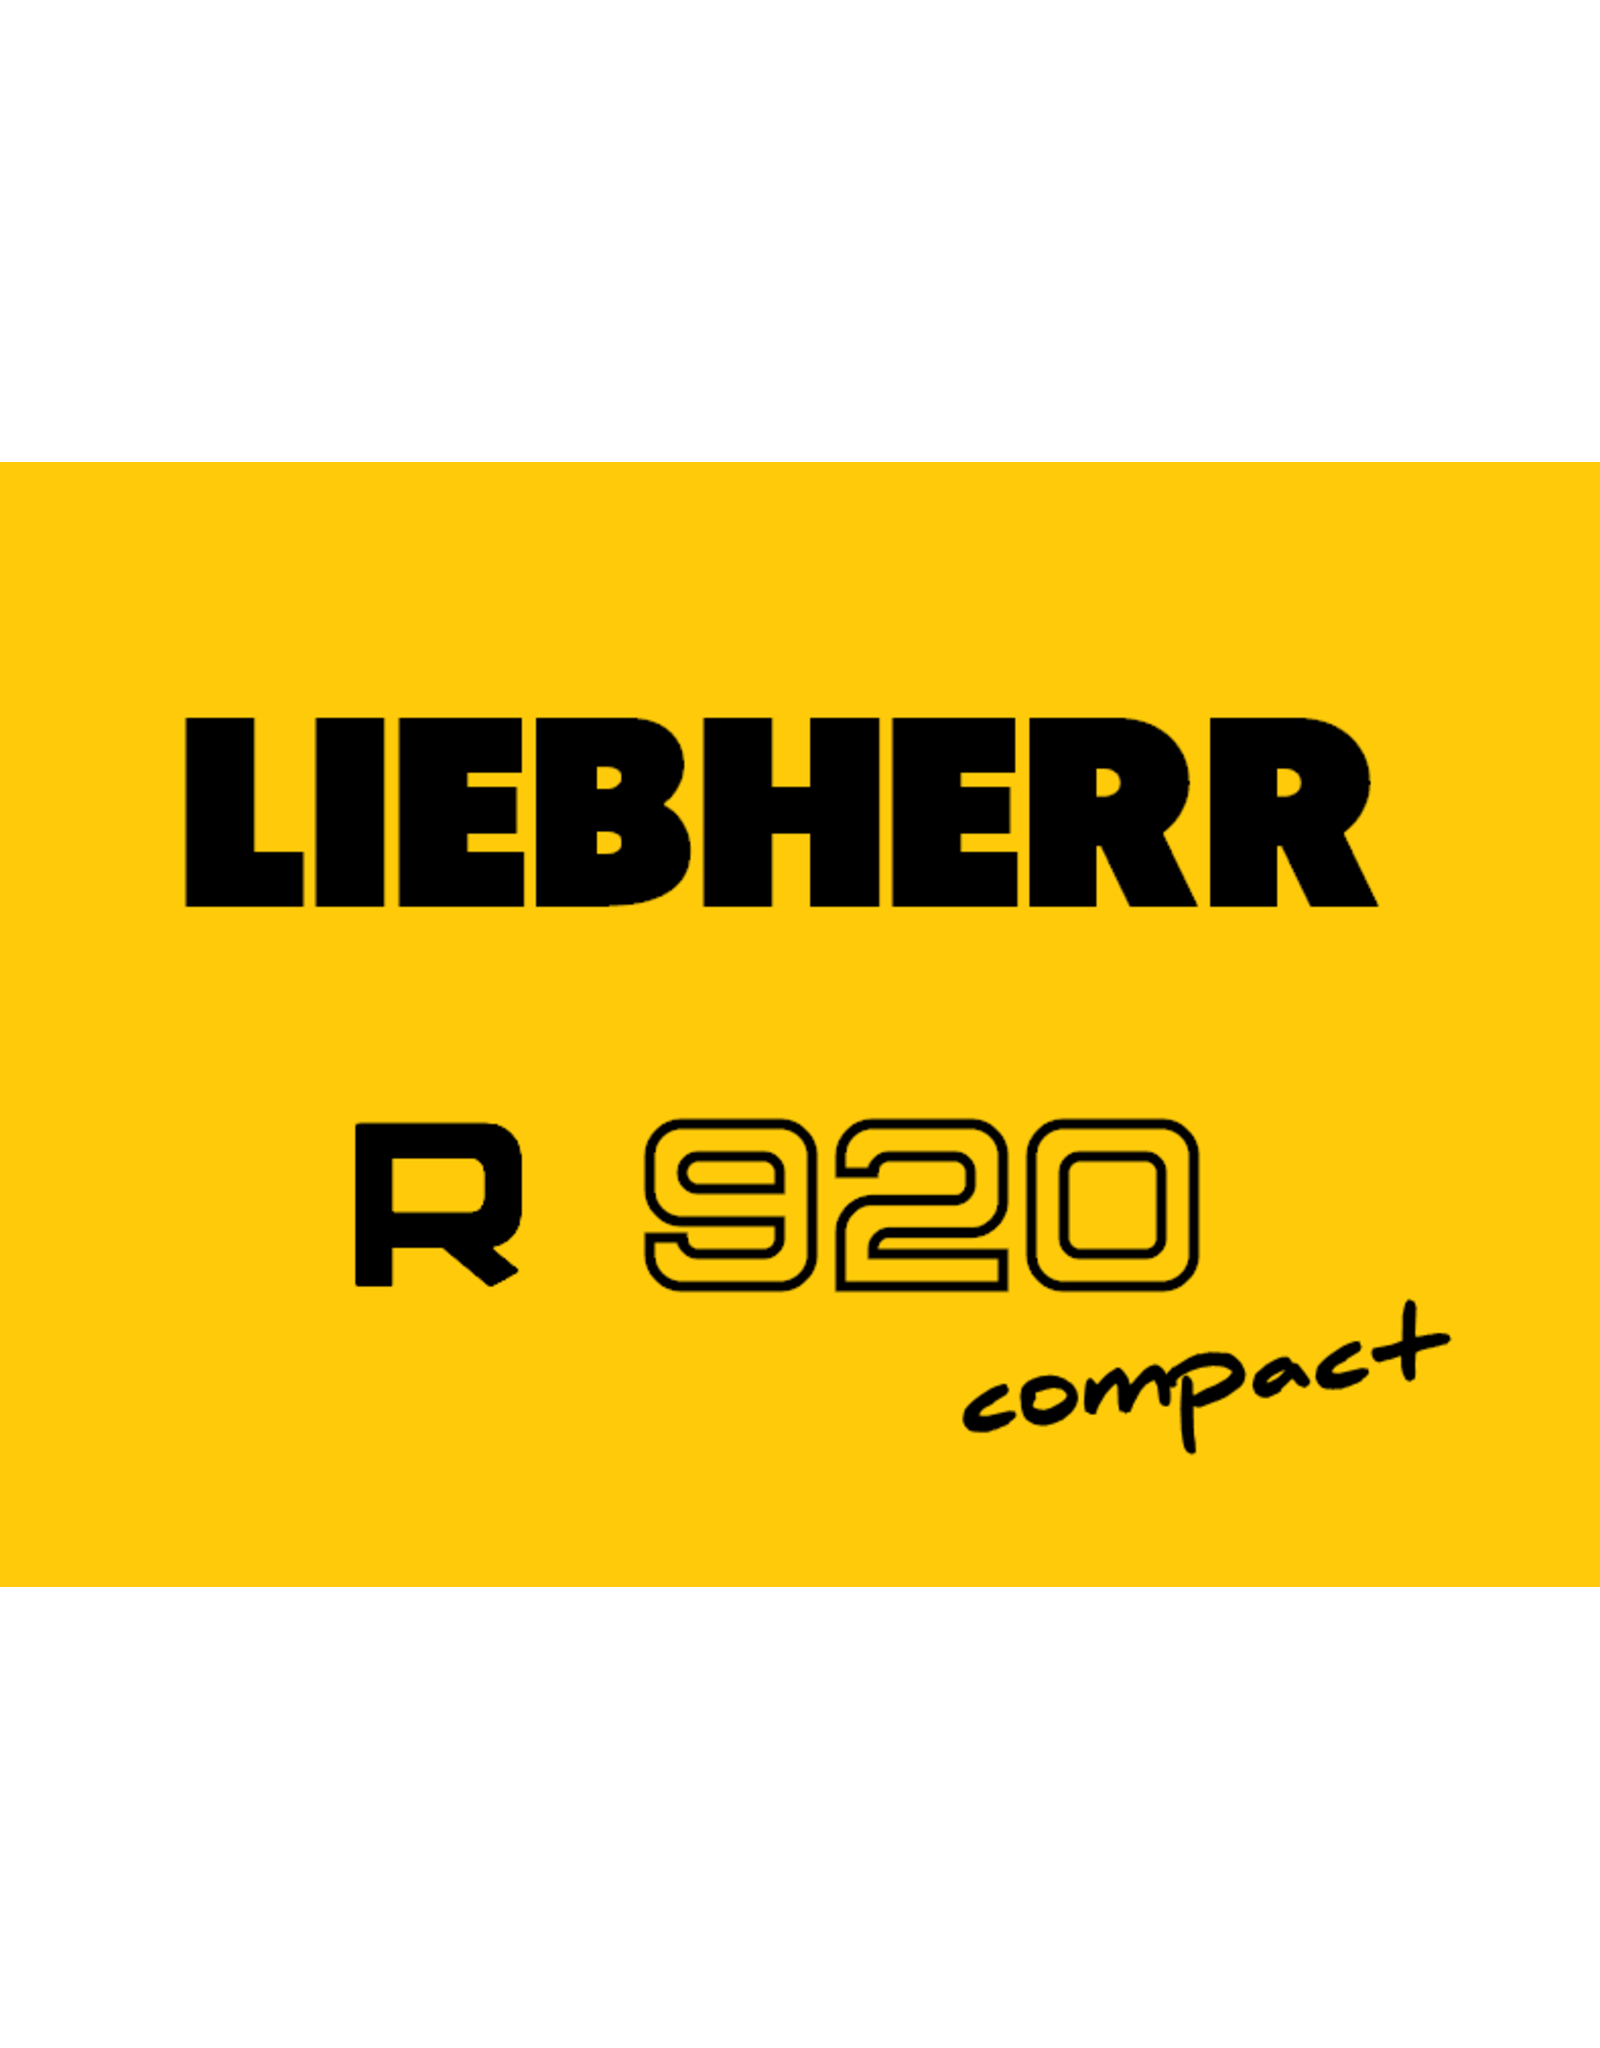 Echle Hartstahl GmbH FOPS für Liebherr R 920 Compact